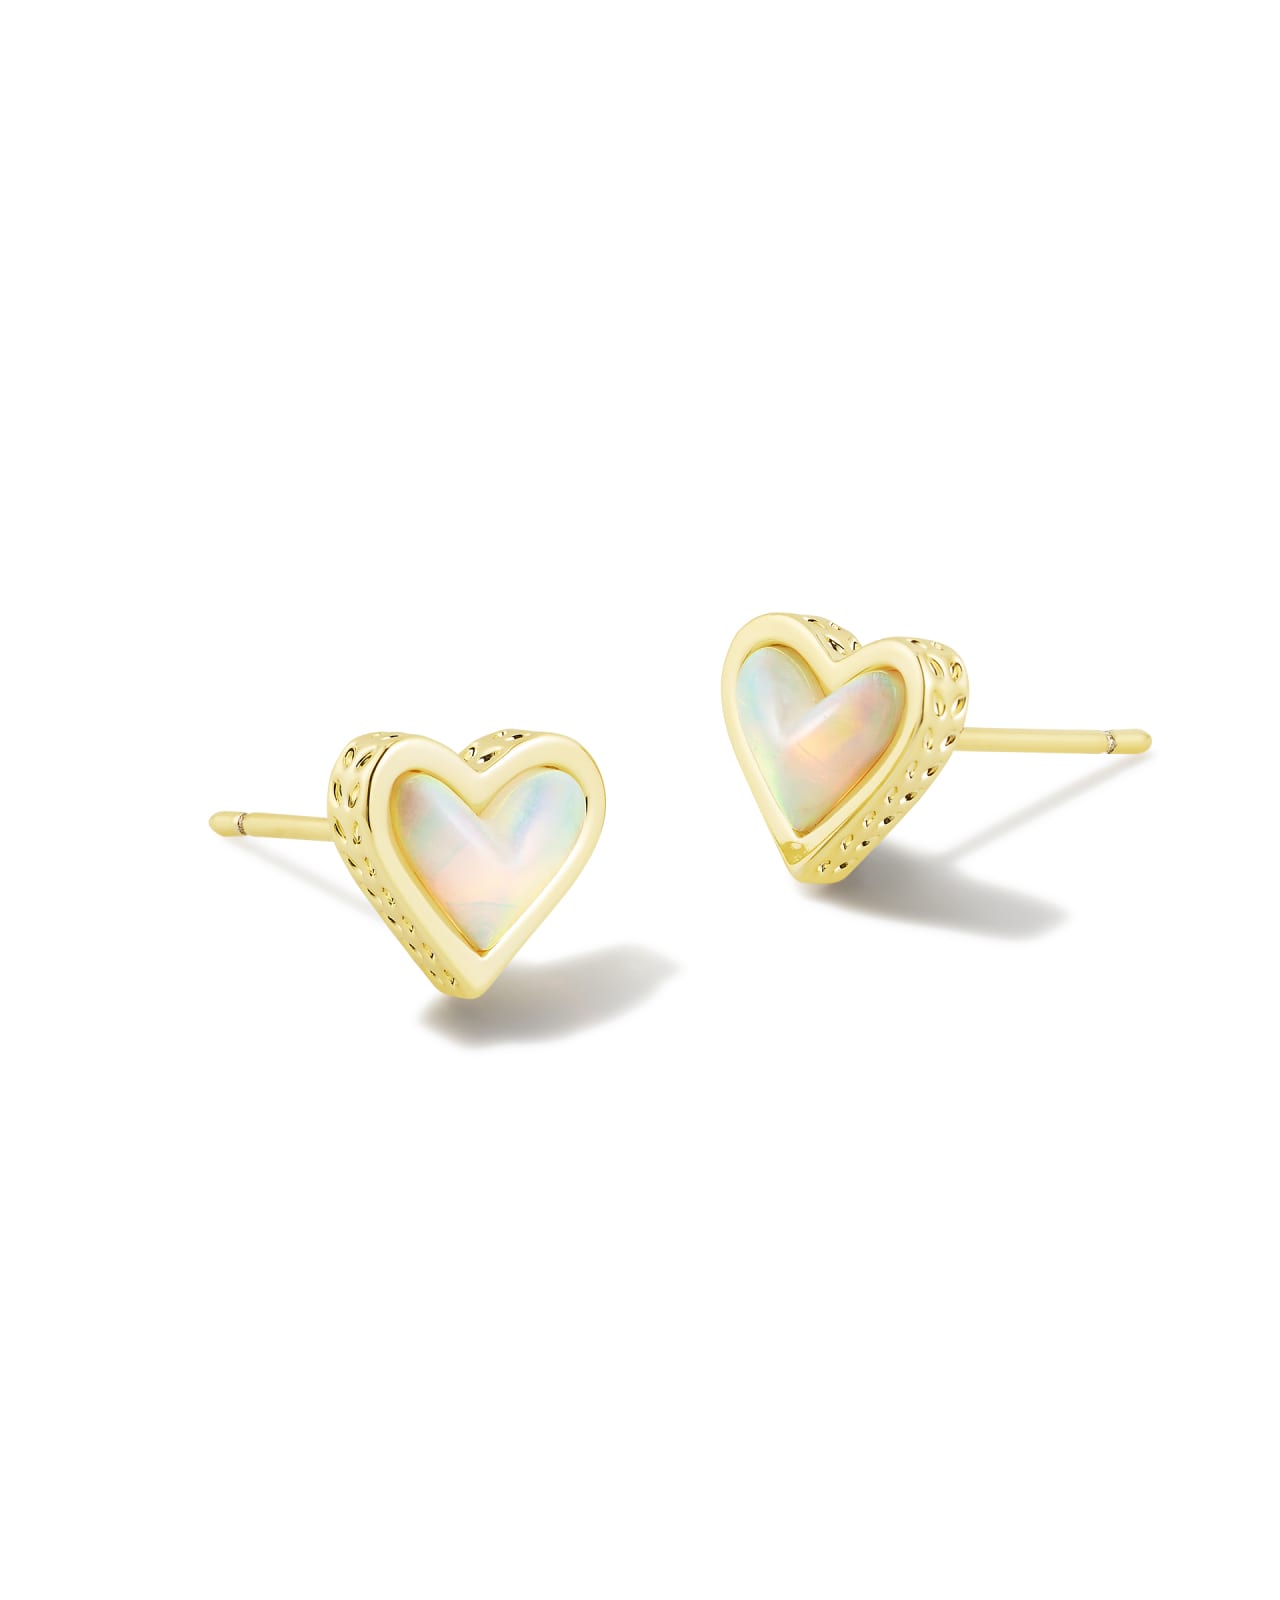 Framed Ari Heart Gold Stud Earrings in White Opalescent Resin | Kendra Scott